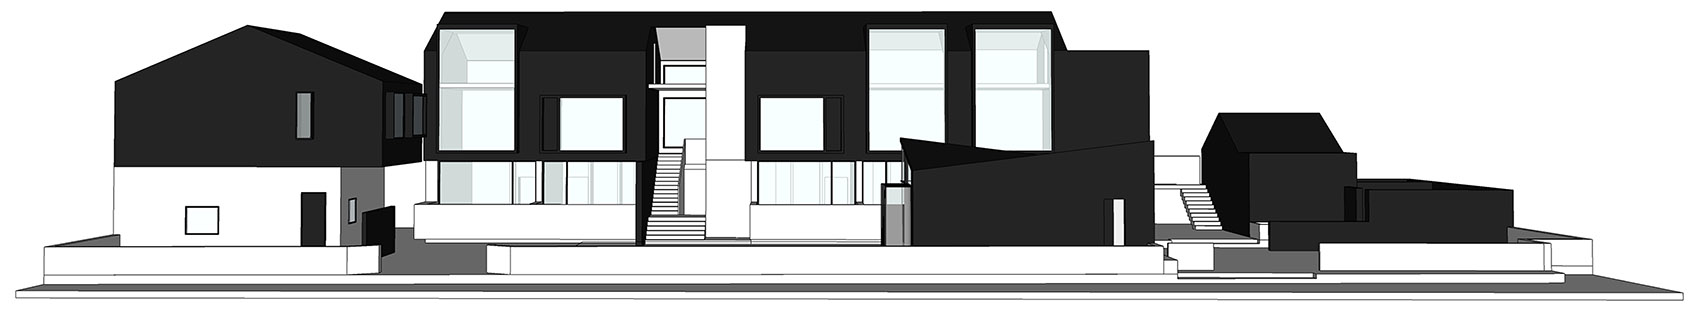 37-HOUSE-OF-MO_DPAA-Design-Studio.jpg